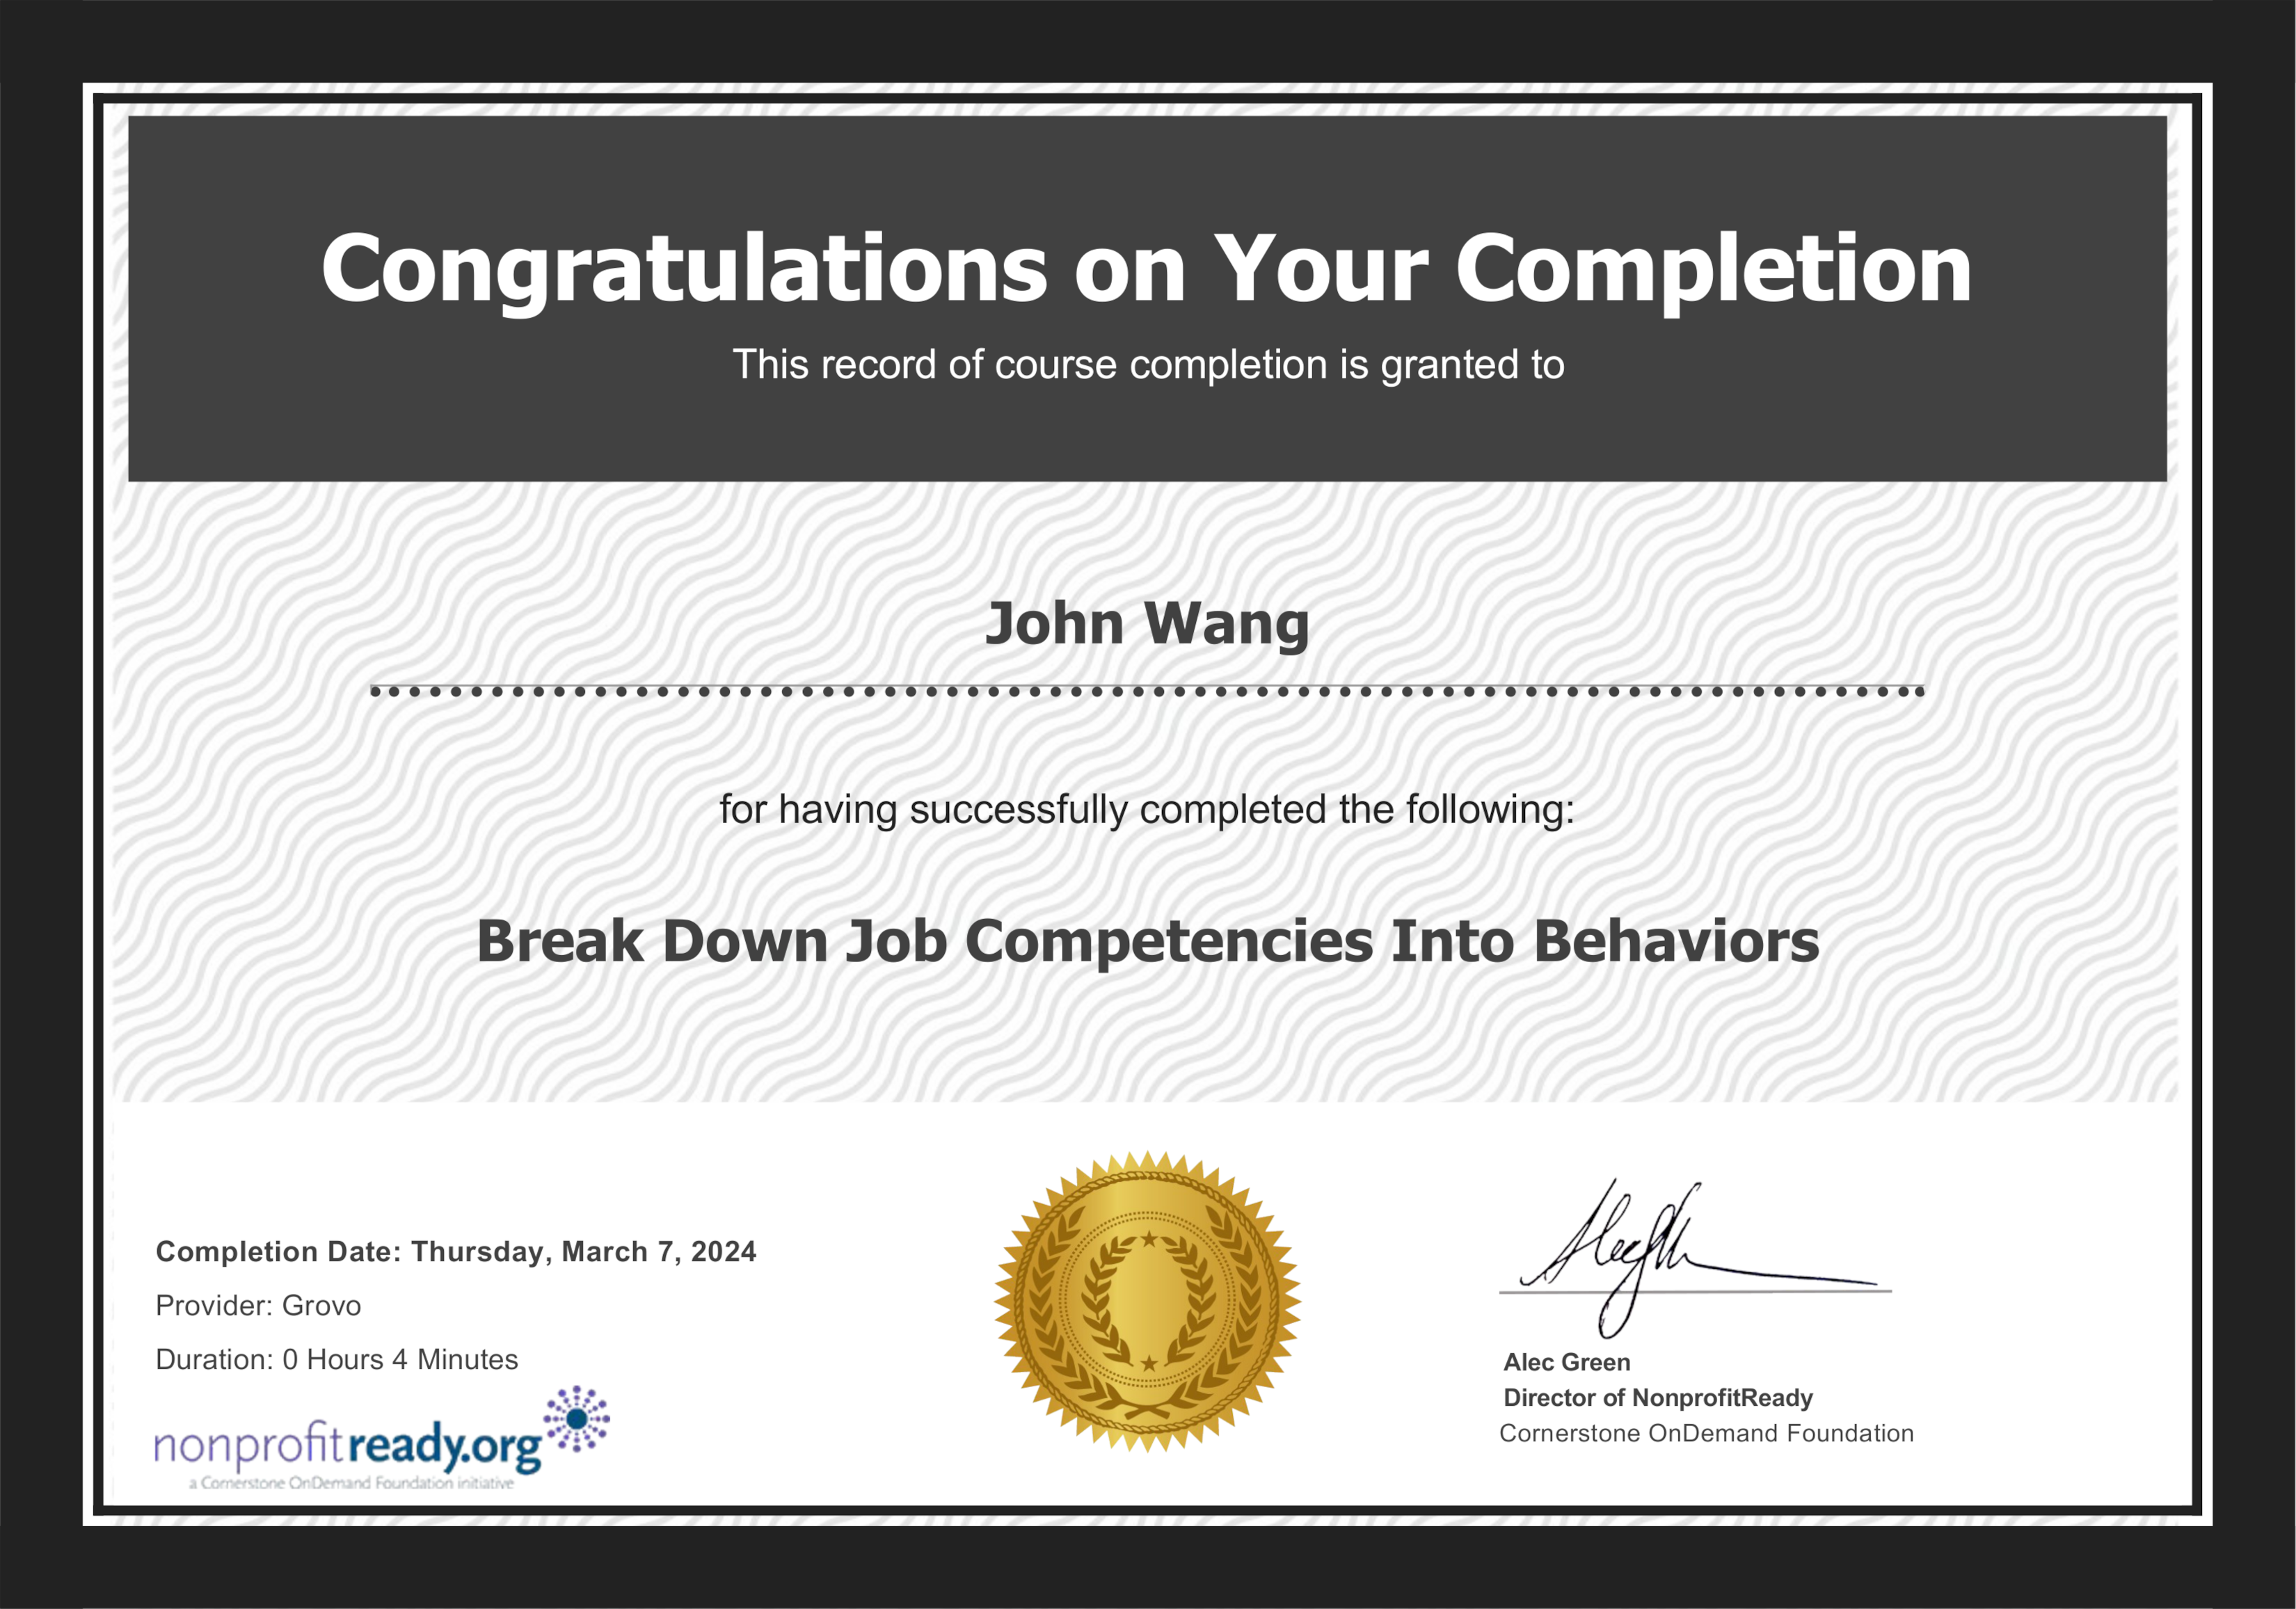 John's Break Down Job Competencies Into Behaviors from NonprofitReady by Grovo